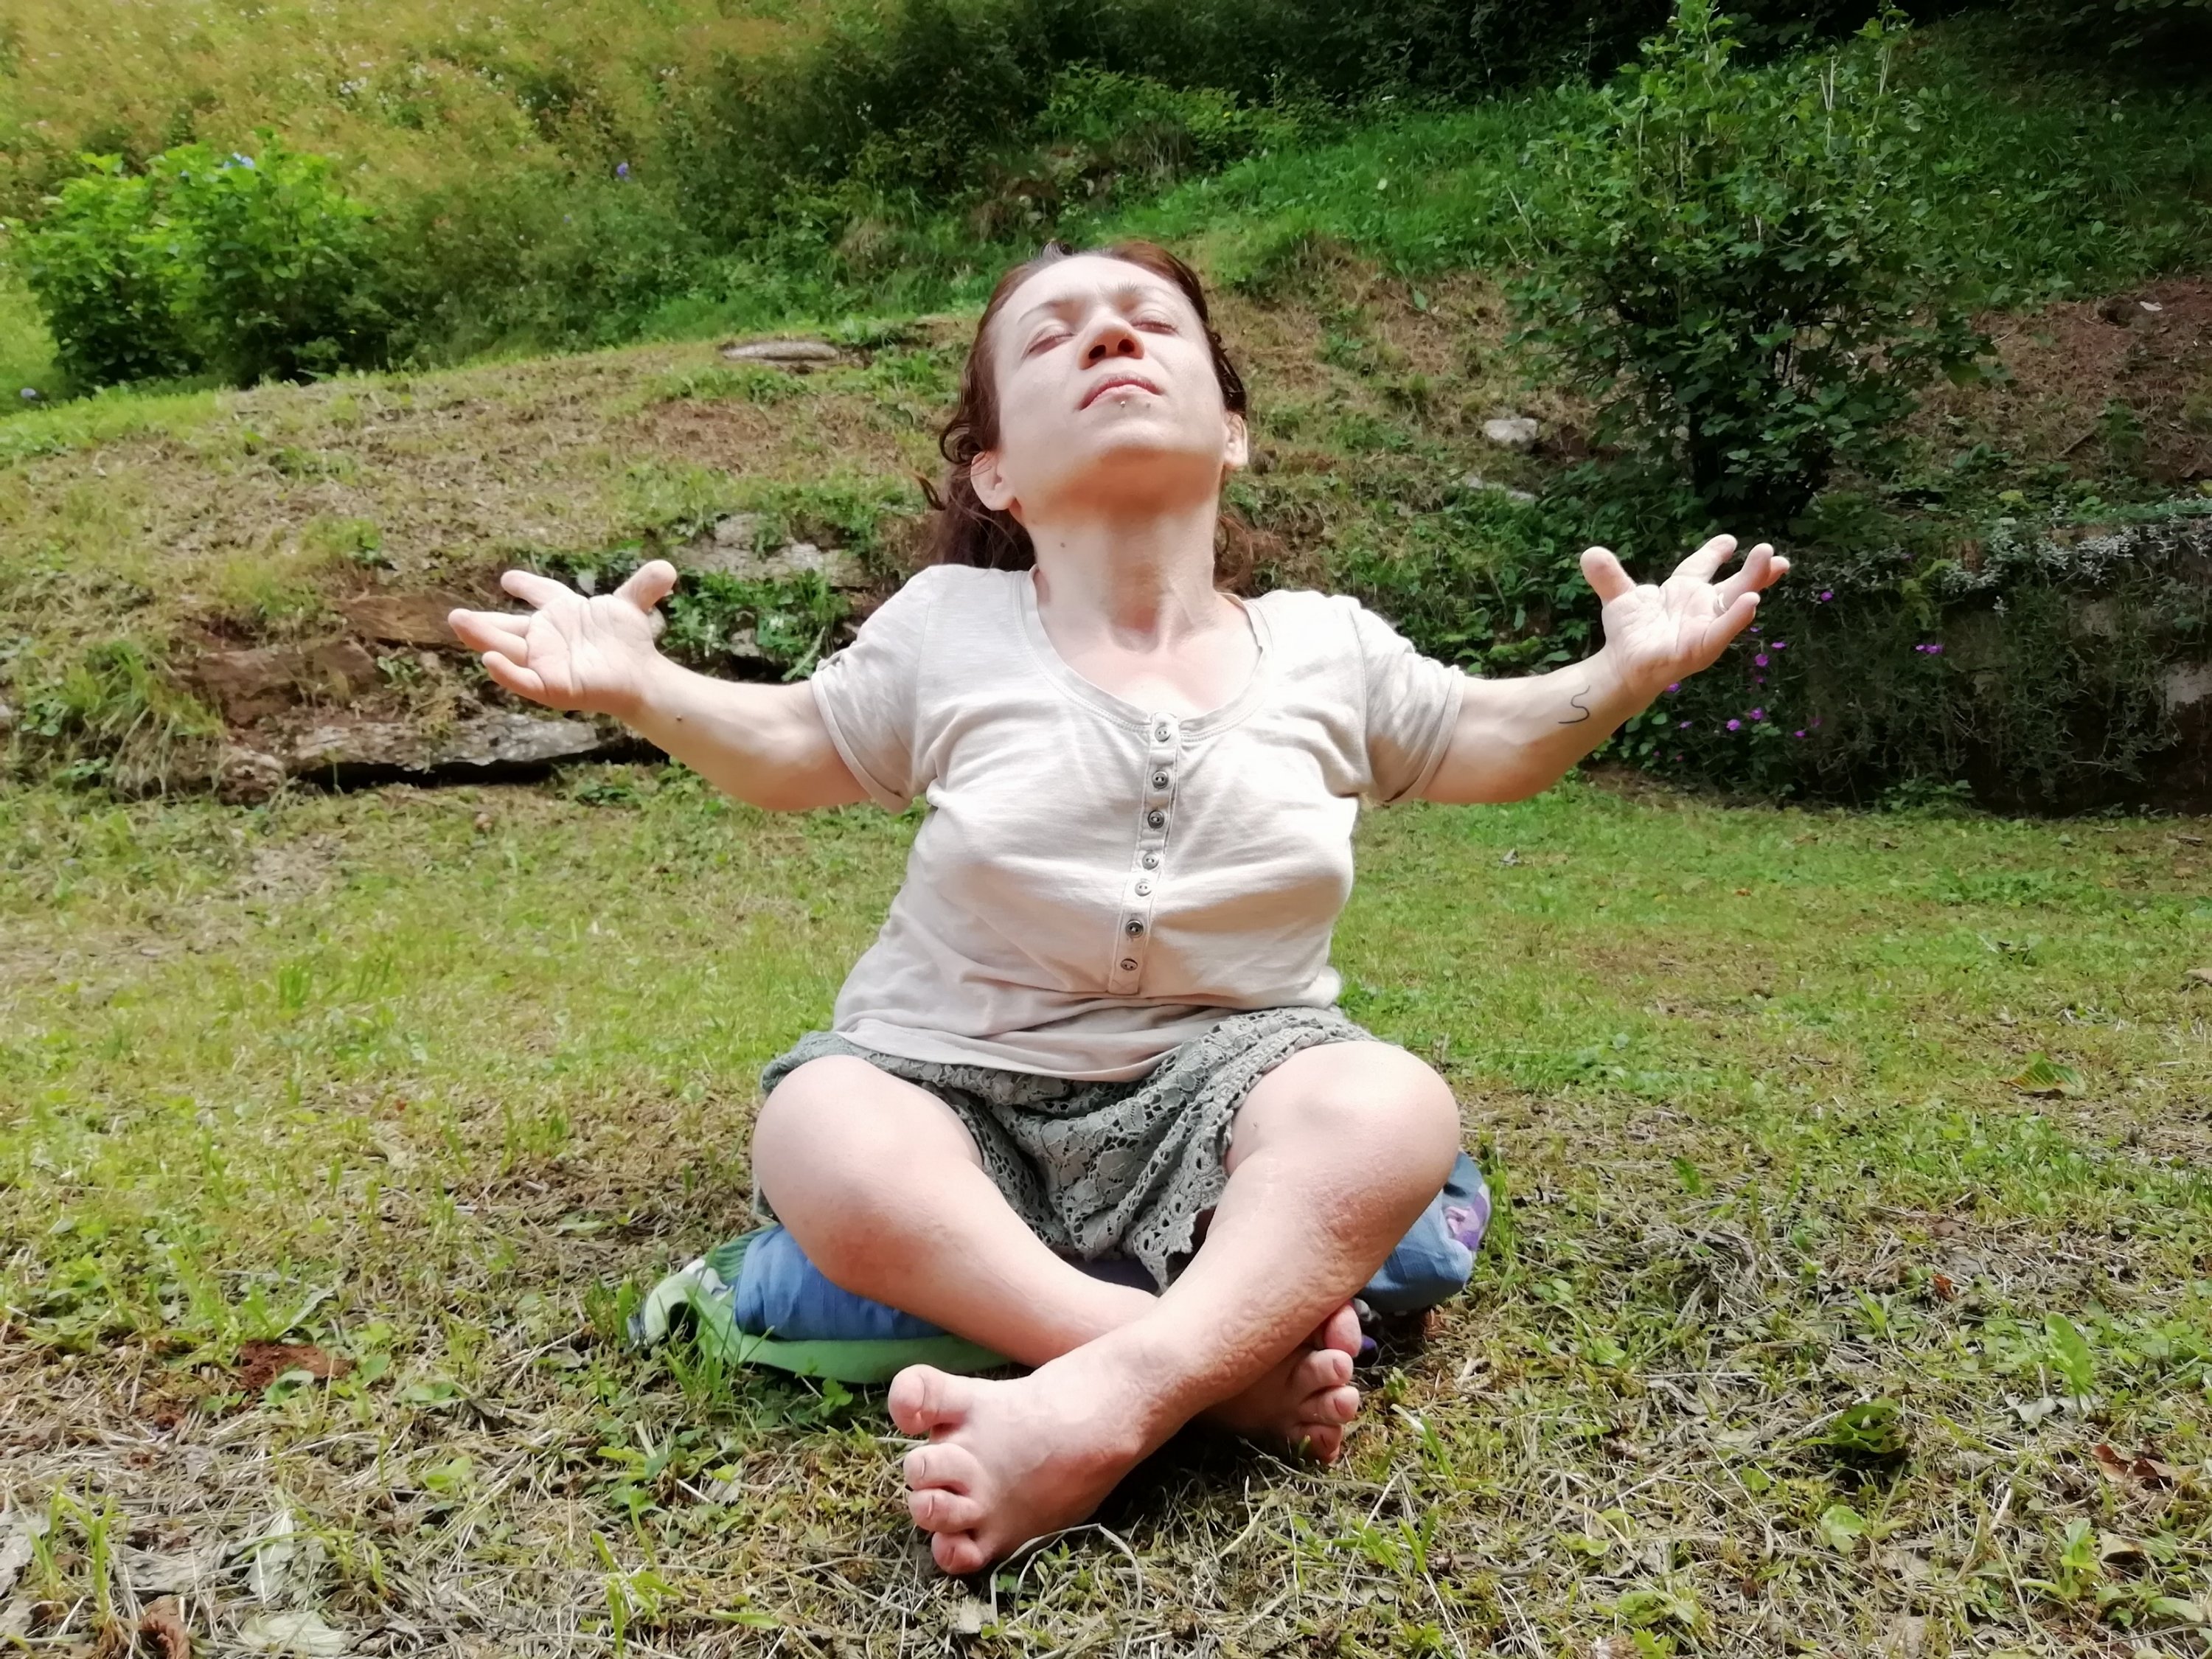 Nanabianca che fa yoga (inspiro a braccia aperte)